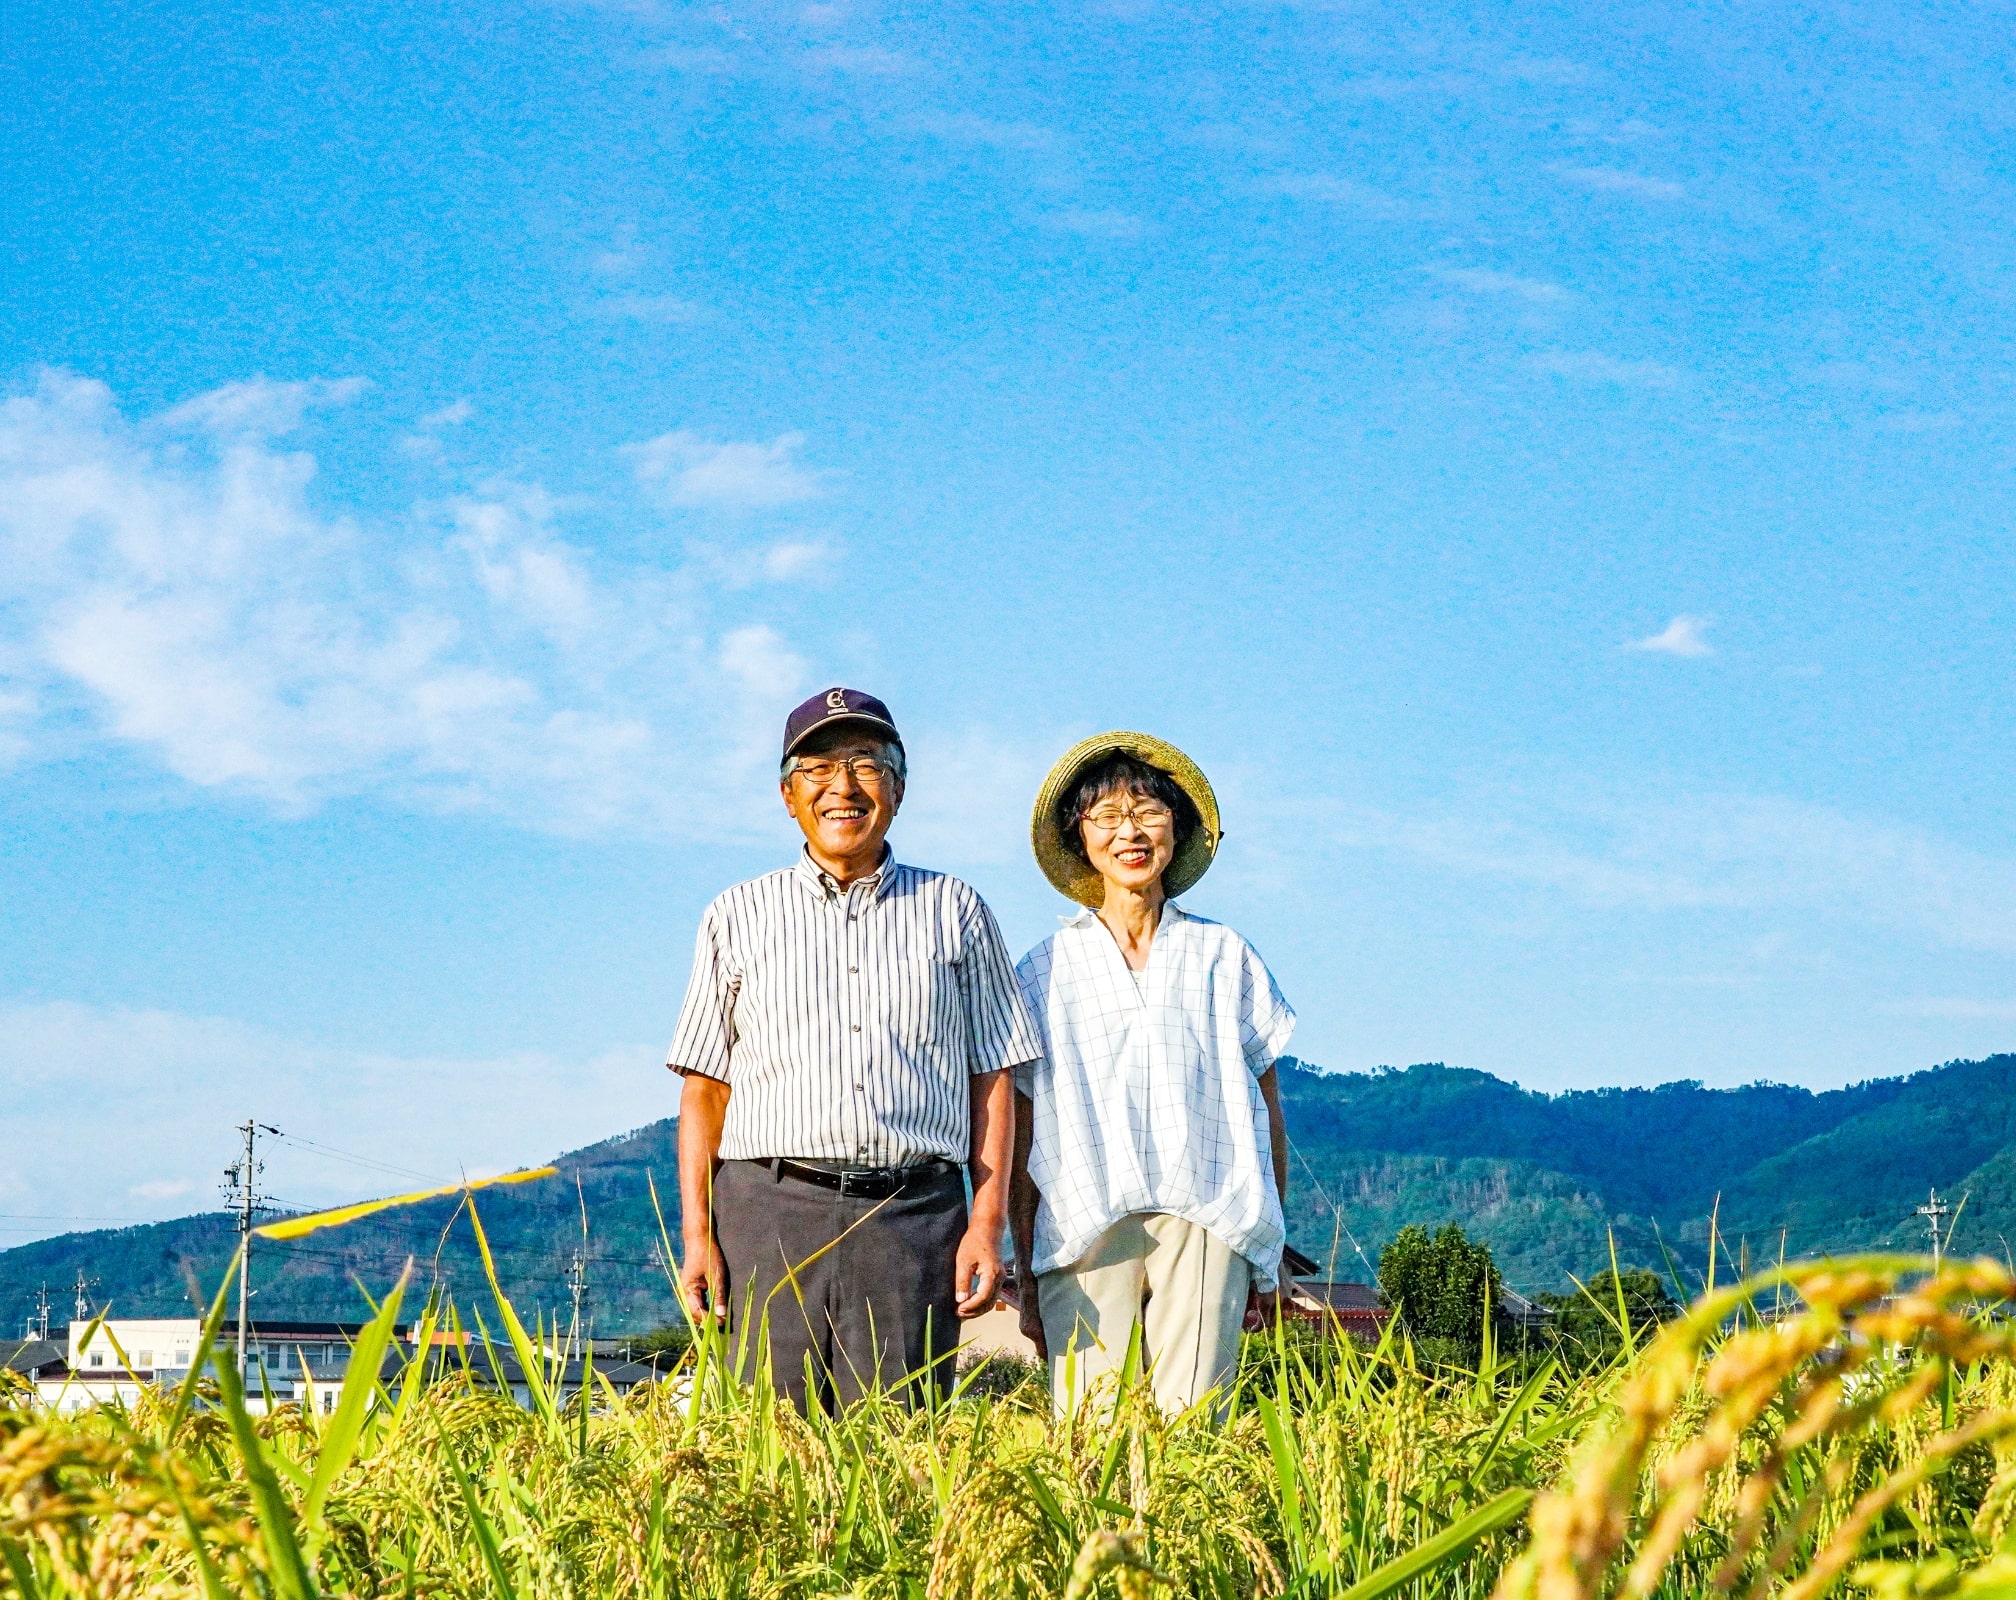 夫婦が笑顔で田んぼに立っている写真